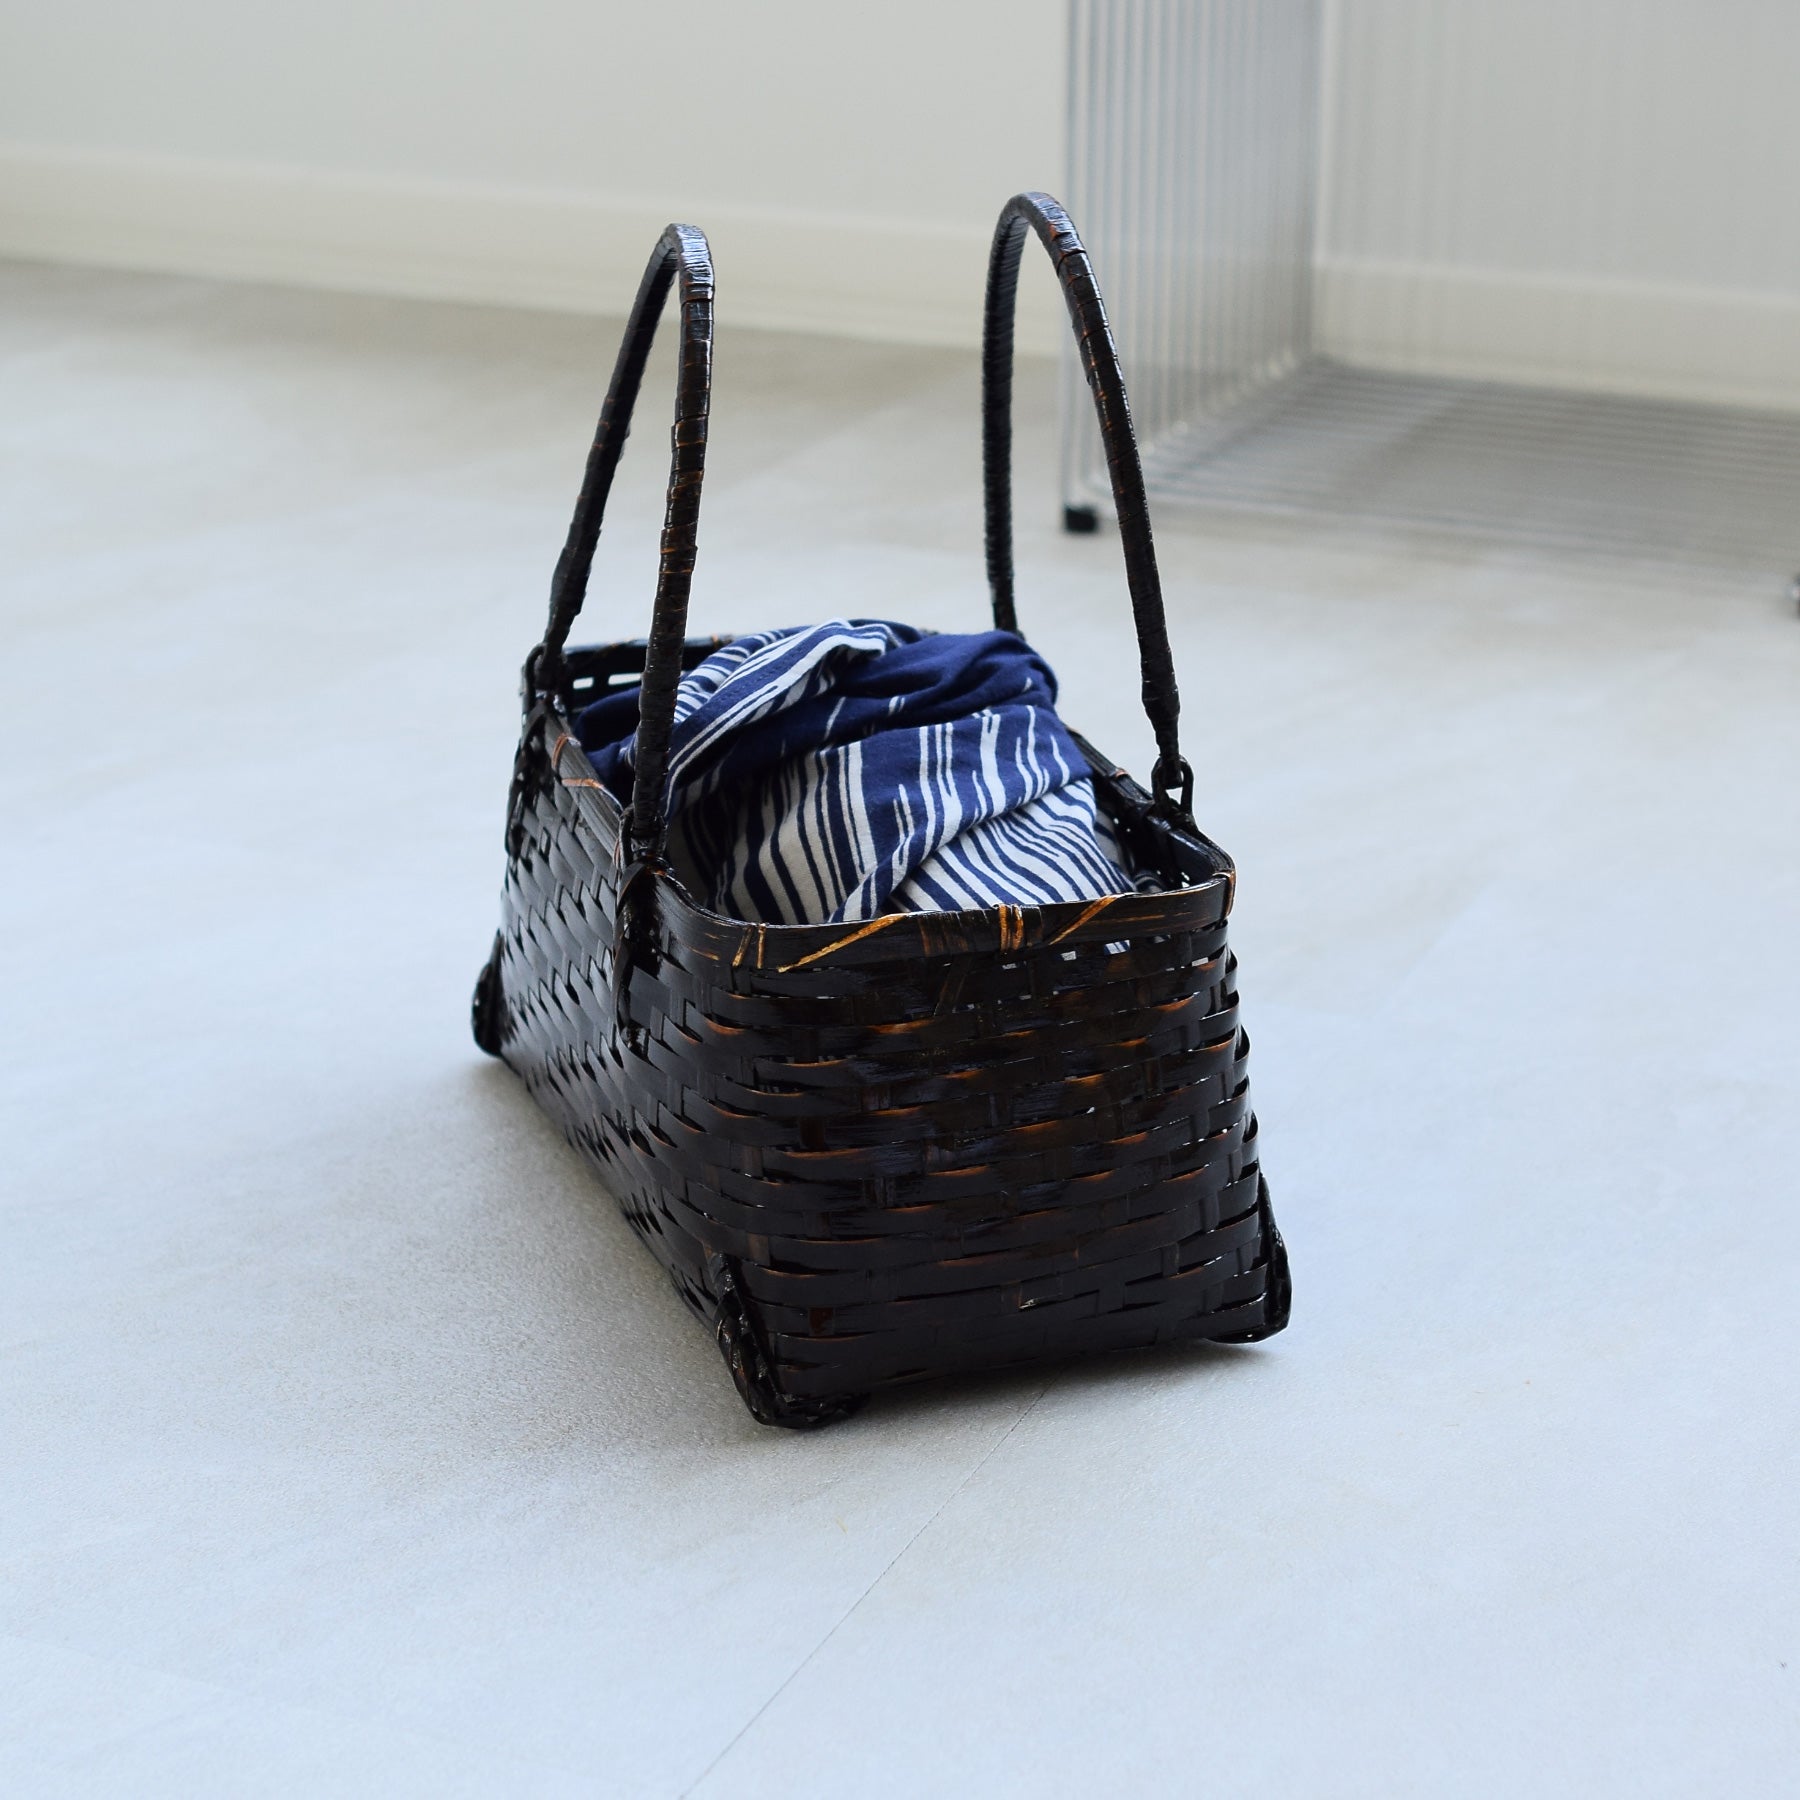 竹かごバッグ+日本製生地あずま袋セット 黒飴色 紺の川面 籠バッグ 